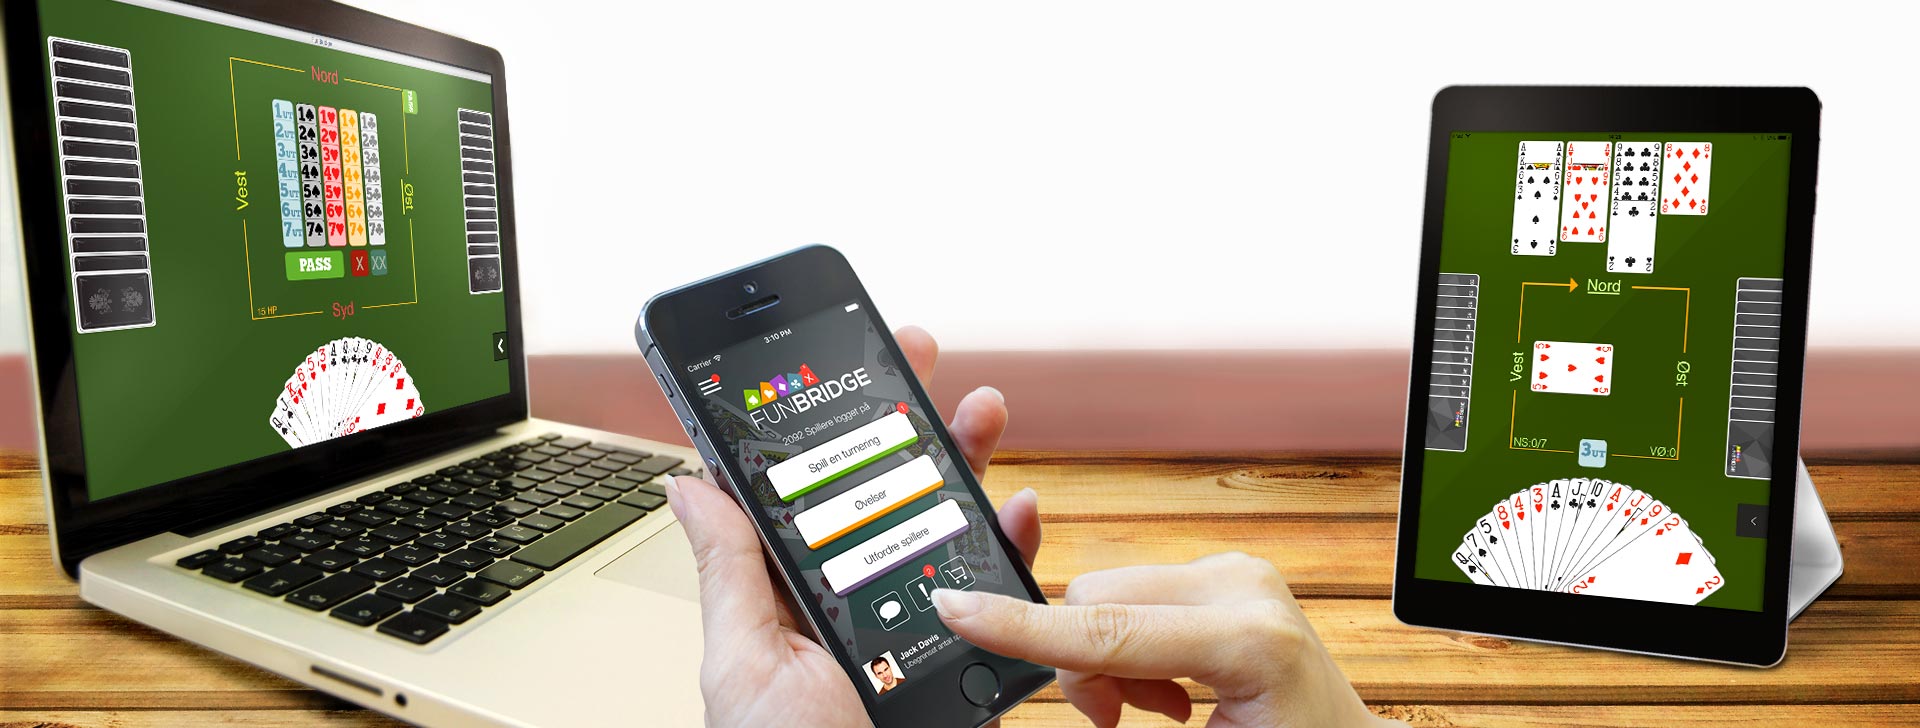 Social opdagelse mobil dating app